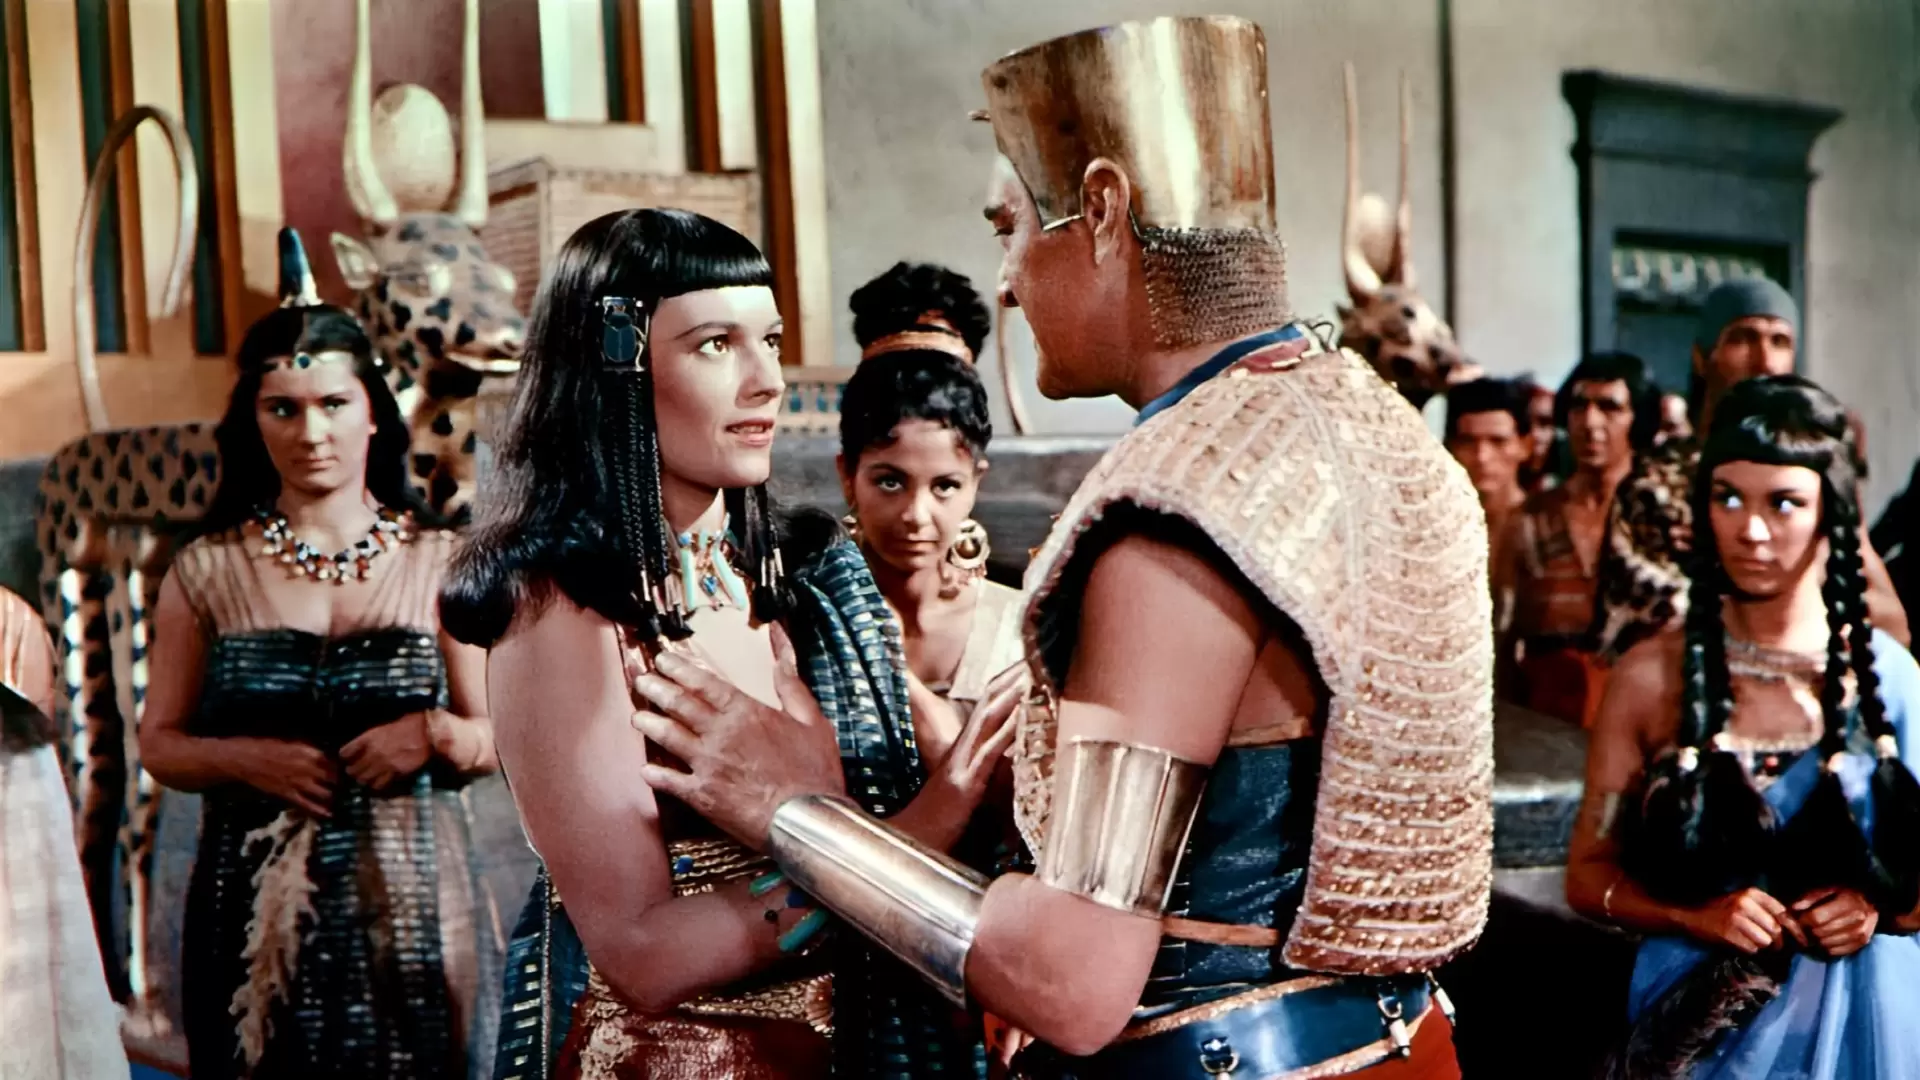 دانلود فیلم Land of the Pharaohs 1955